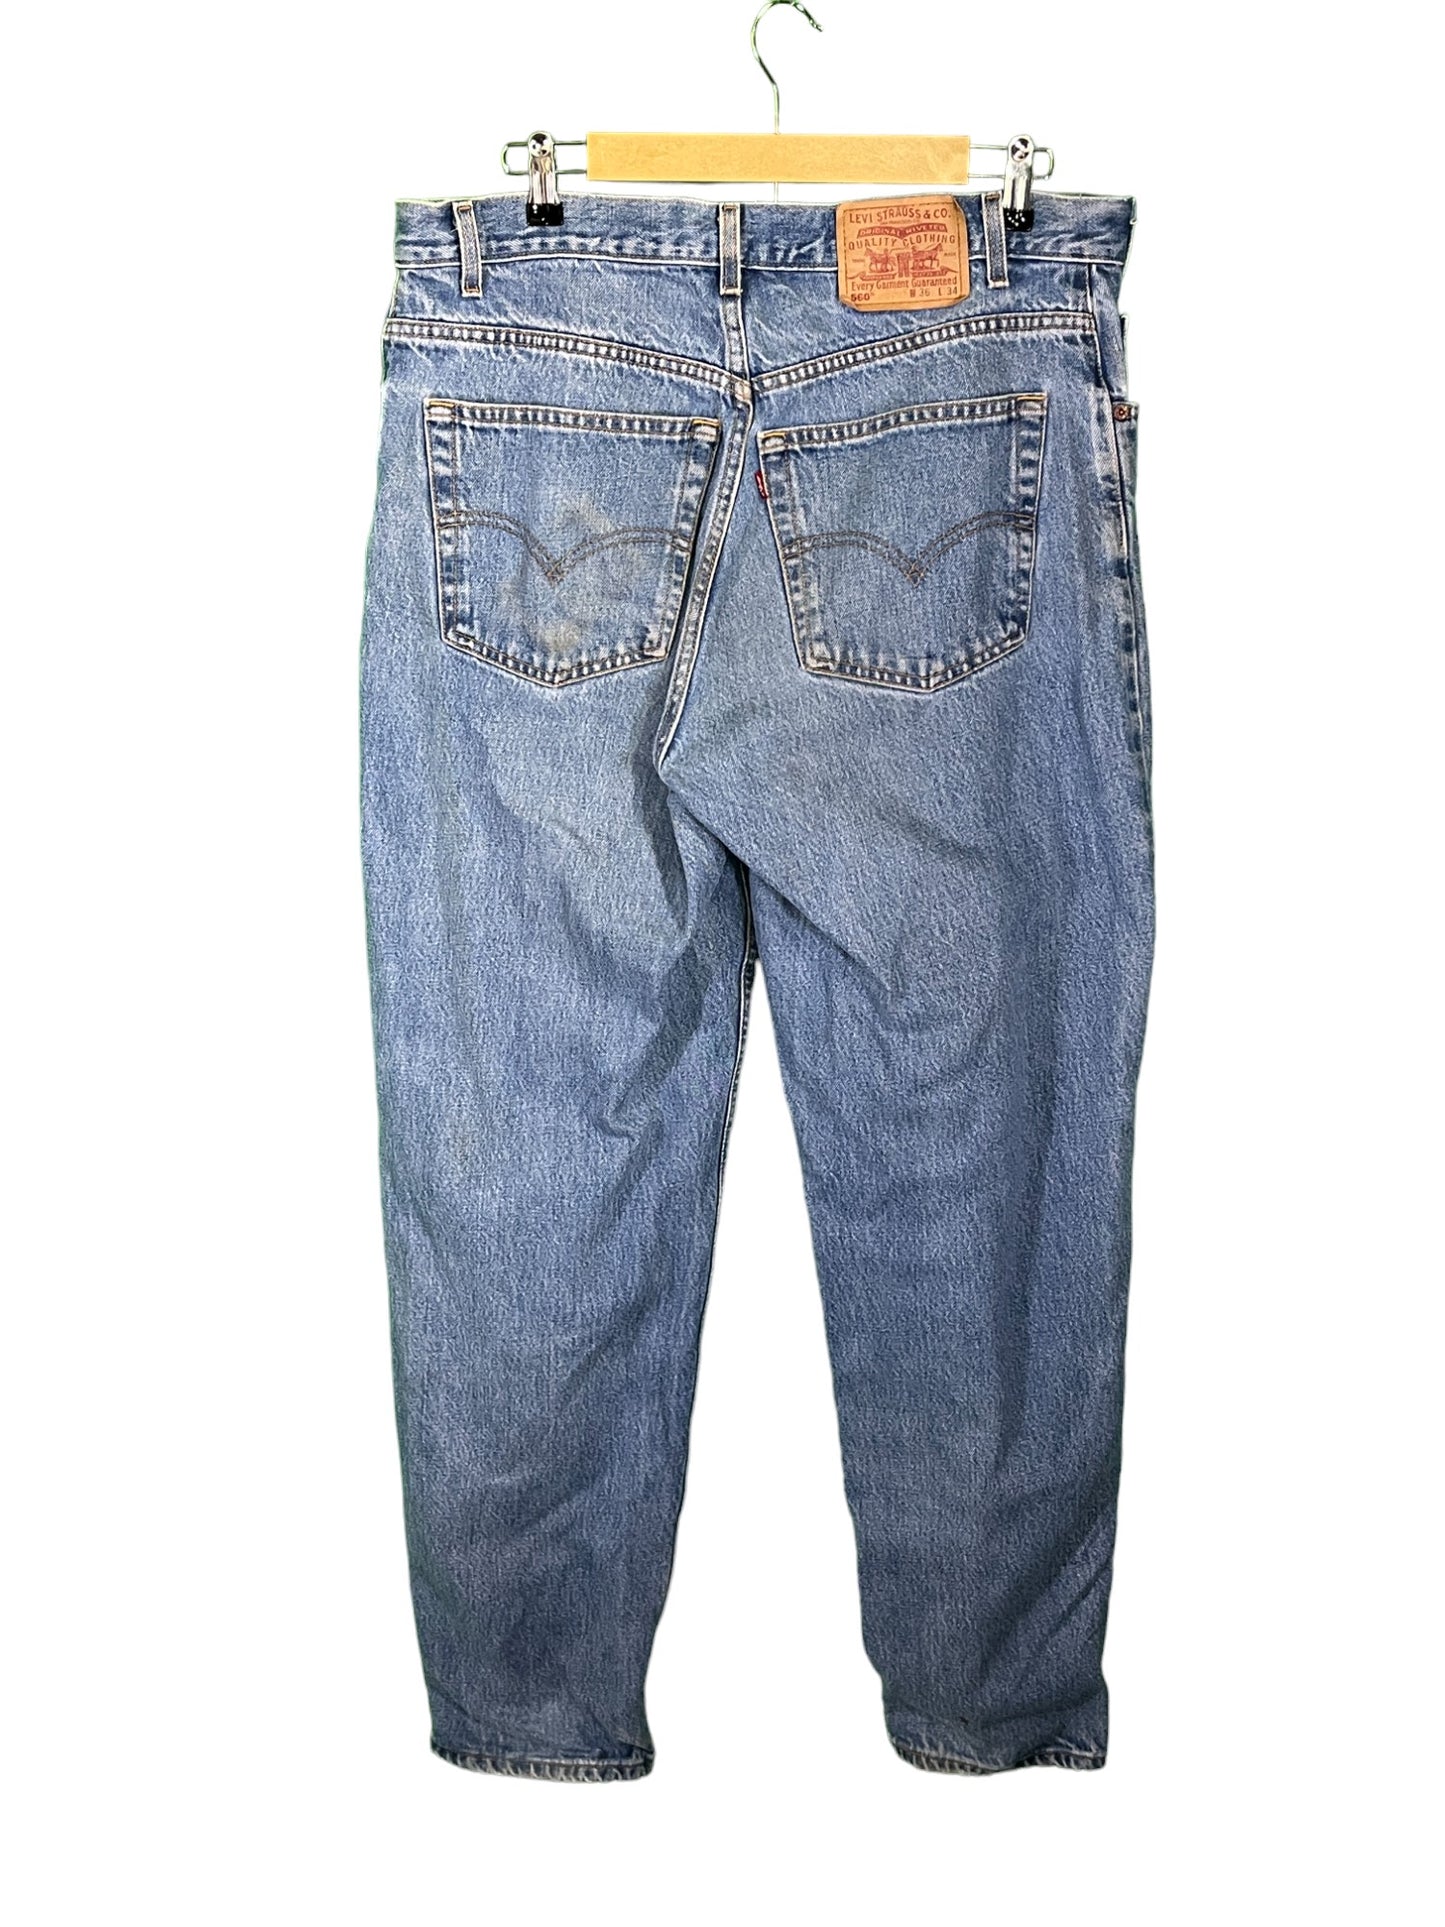 Vintage 90's Levi's Light Wash Denim Jeans Size 34x34